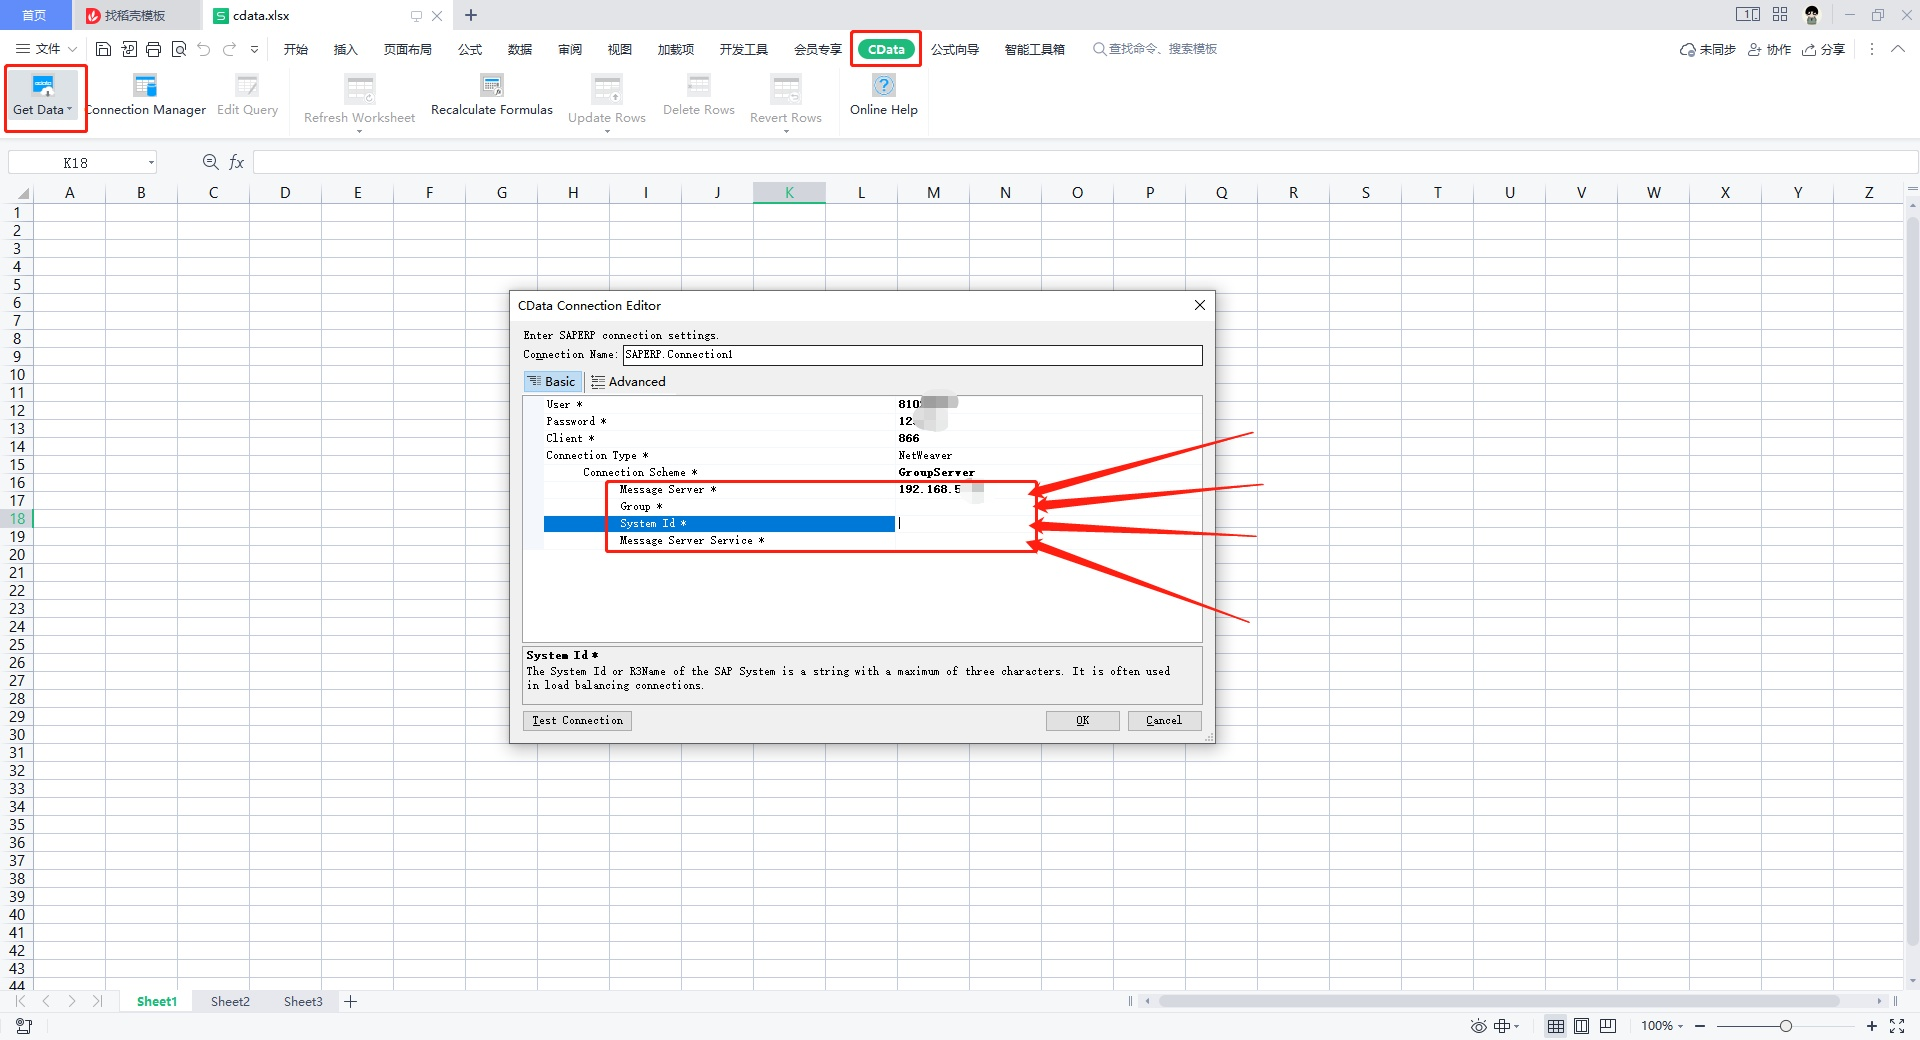 使用 Excel cdata addmin 连接 SAP ABAP 系统时需要填写的参数定义解释